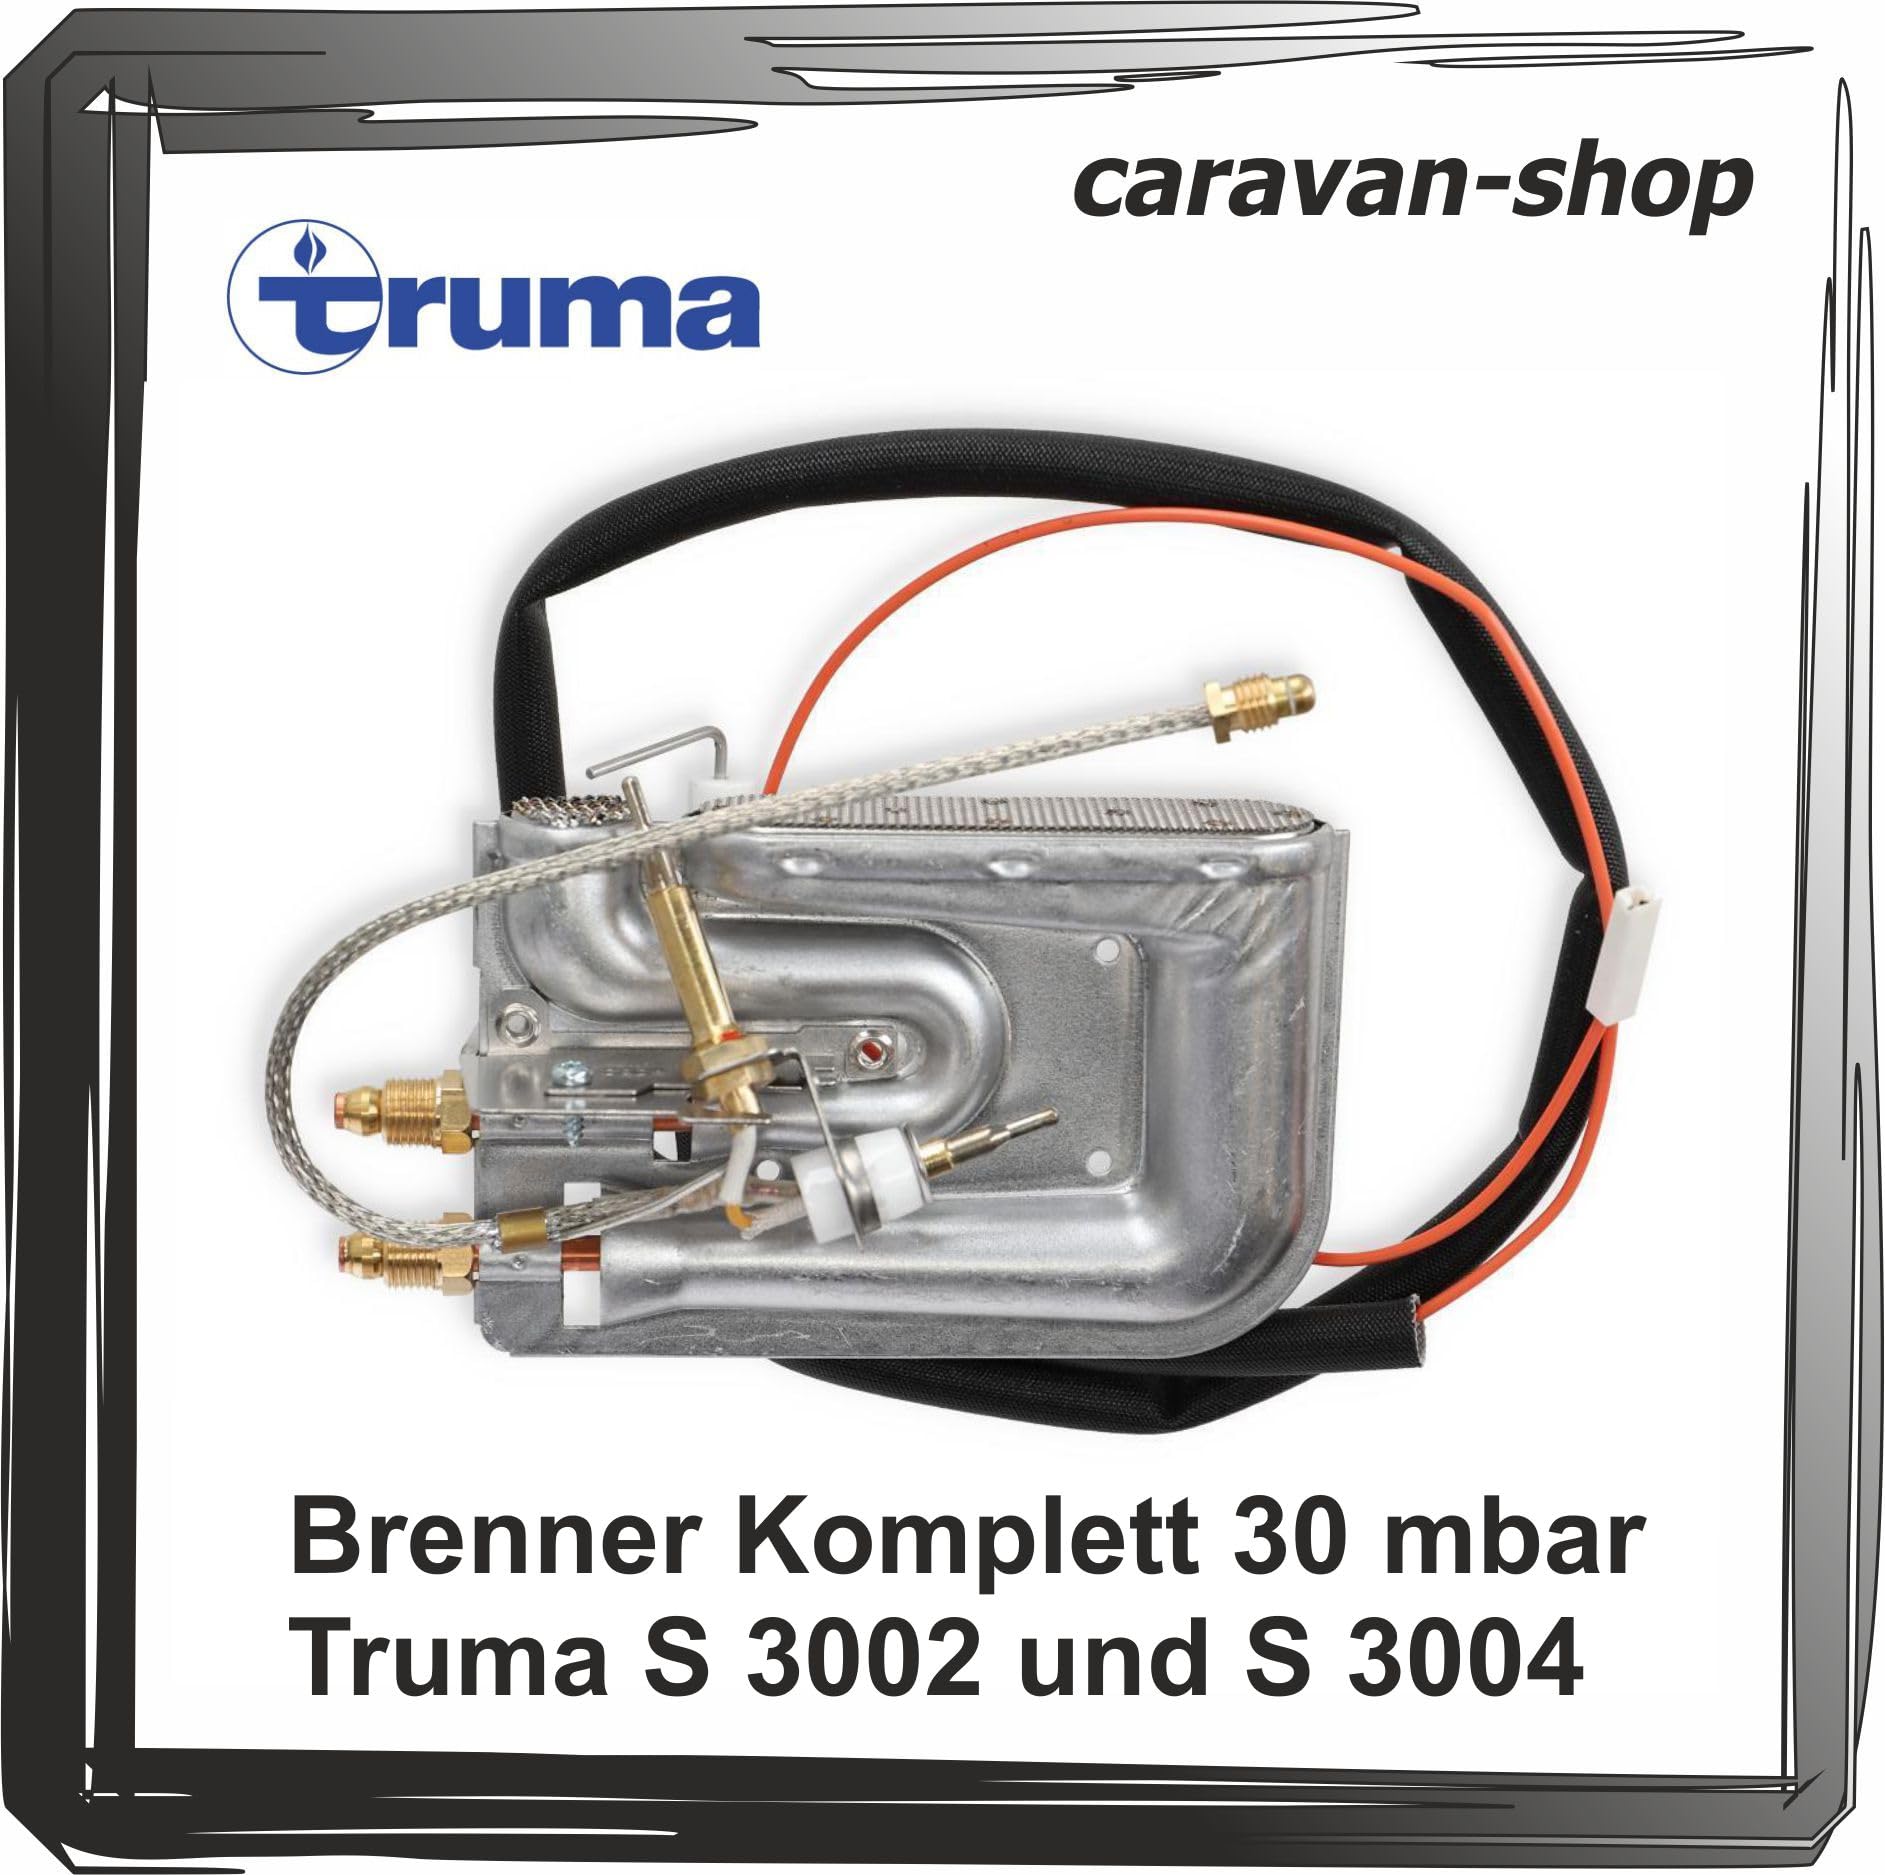 Generisch Truma Brenner komplett 30 mbar Heizung S 3004 S 3002 Caravan Wohnmobil Gas von Generisch